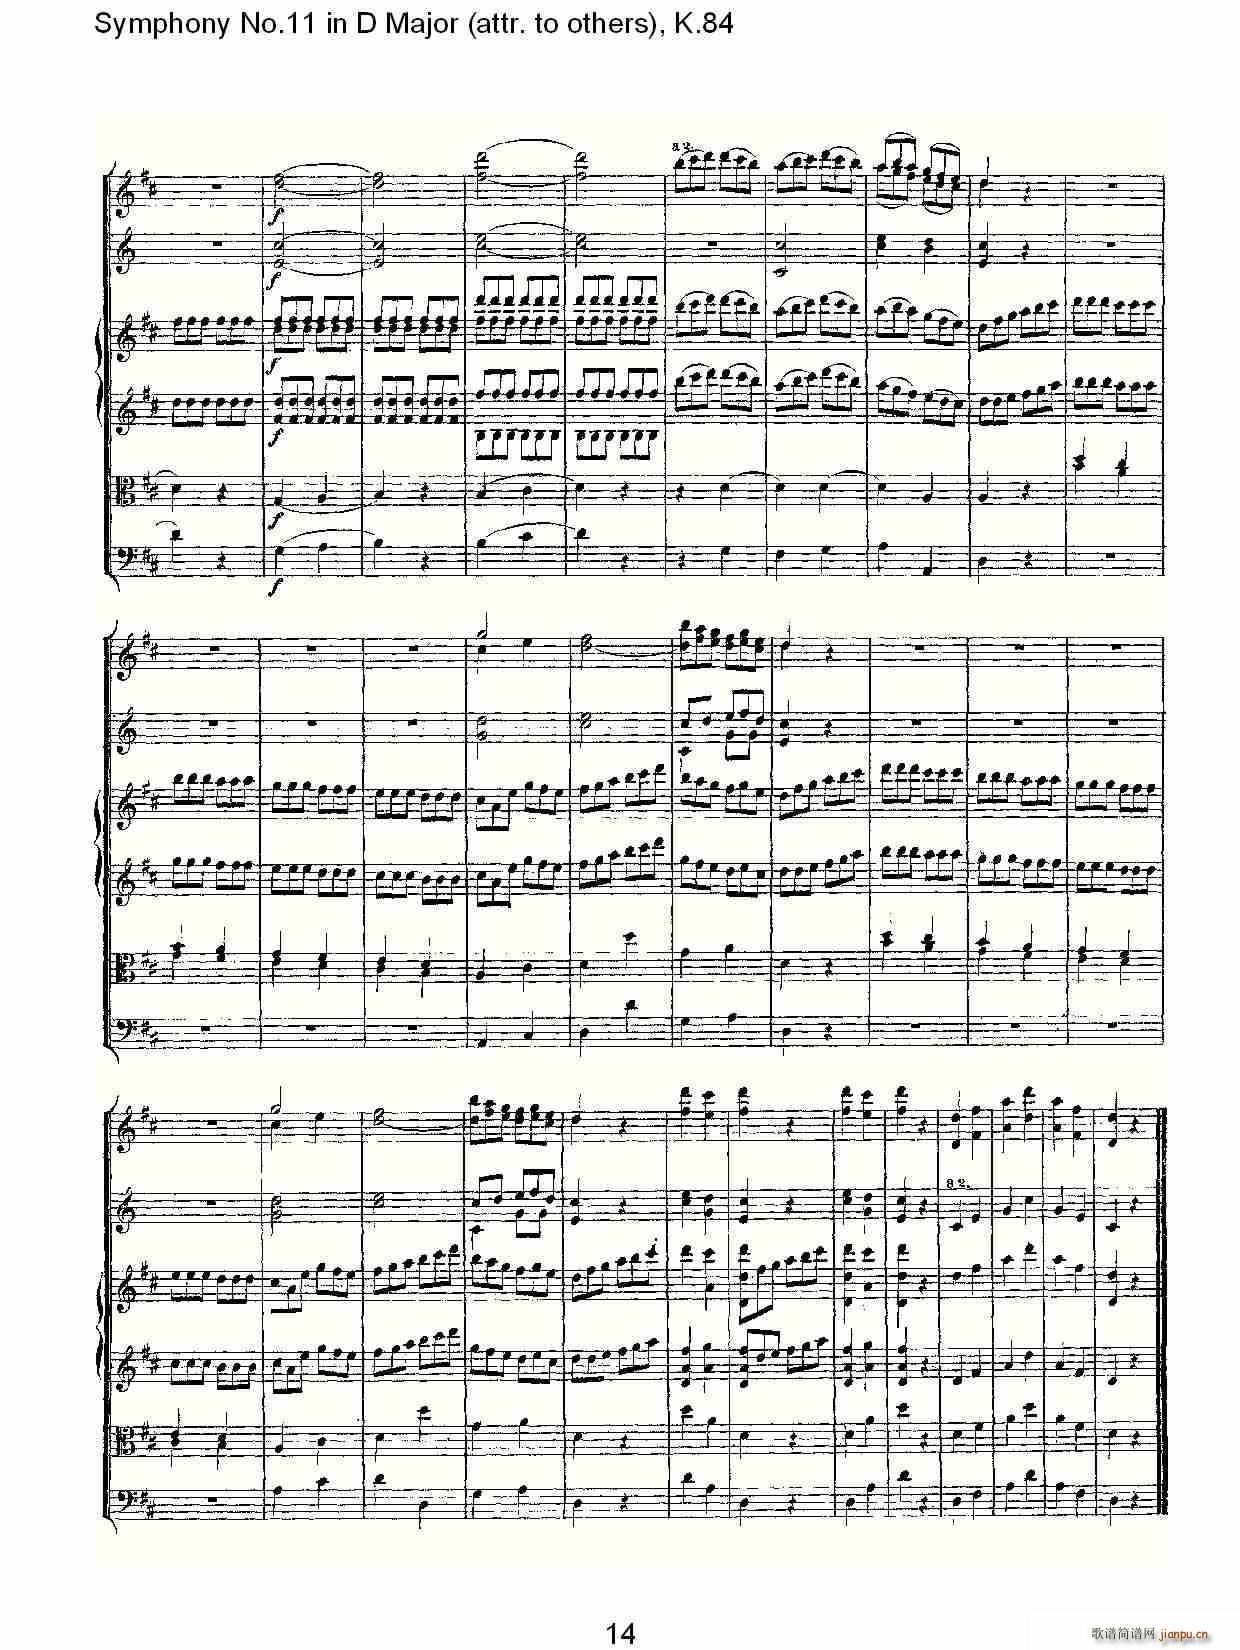 Symphony No.11 in D Major(ʮּ)14